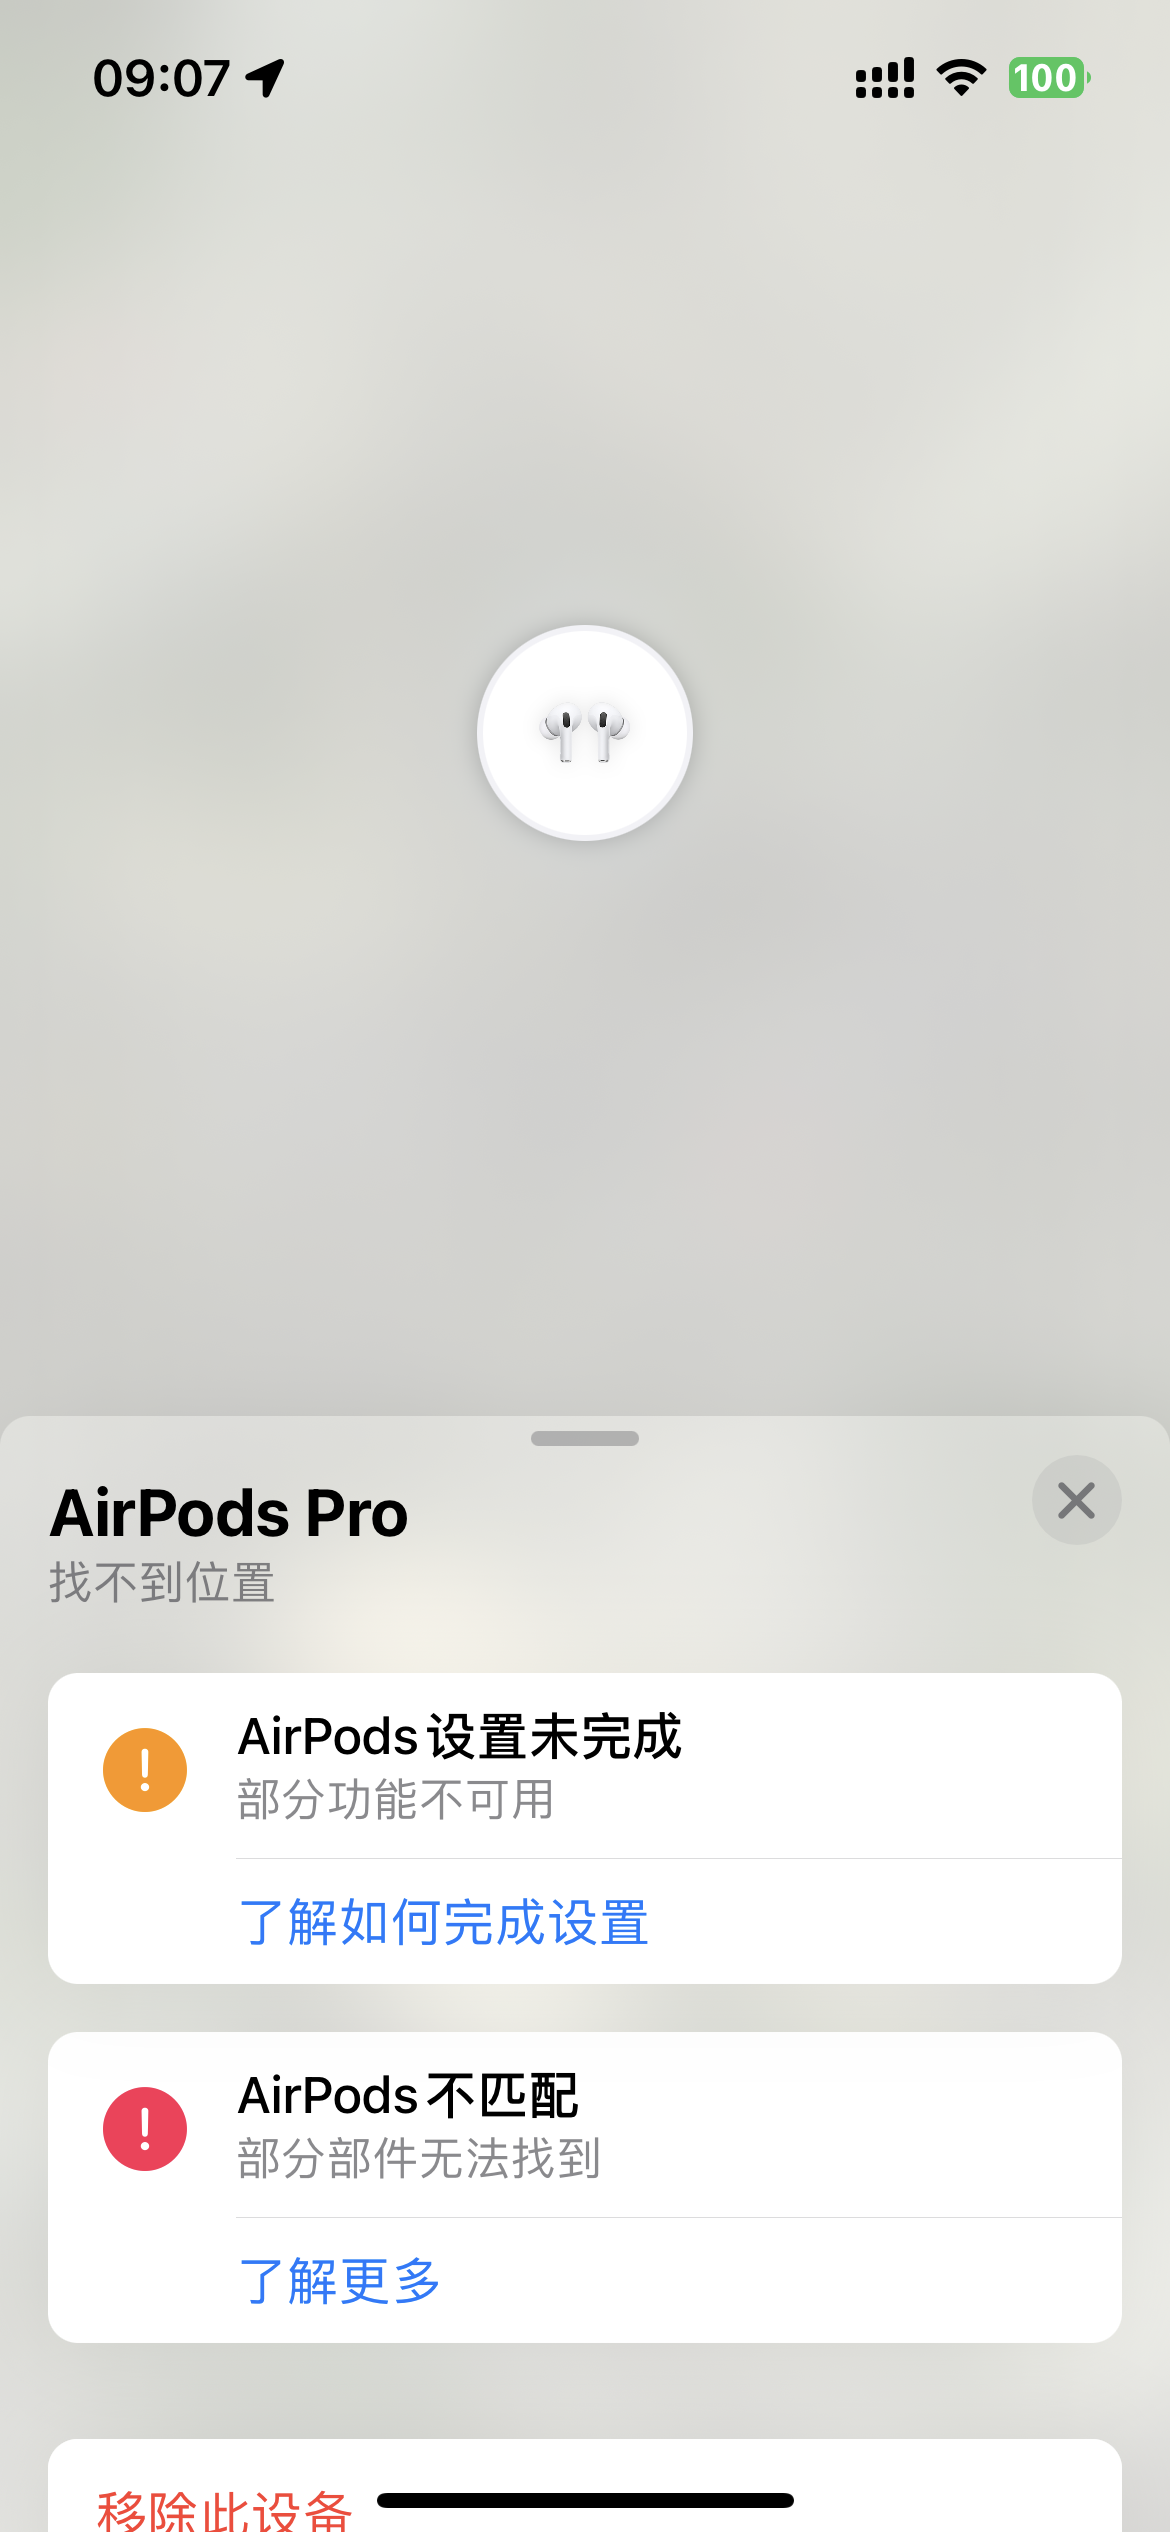 AirPods pro 二代无法使用查找- Apple 社区